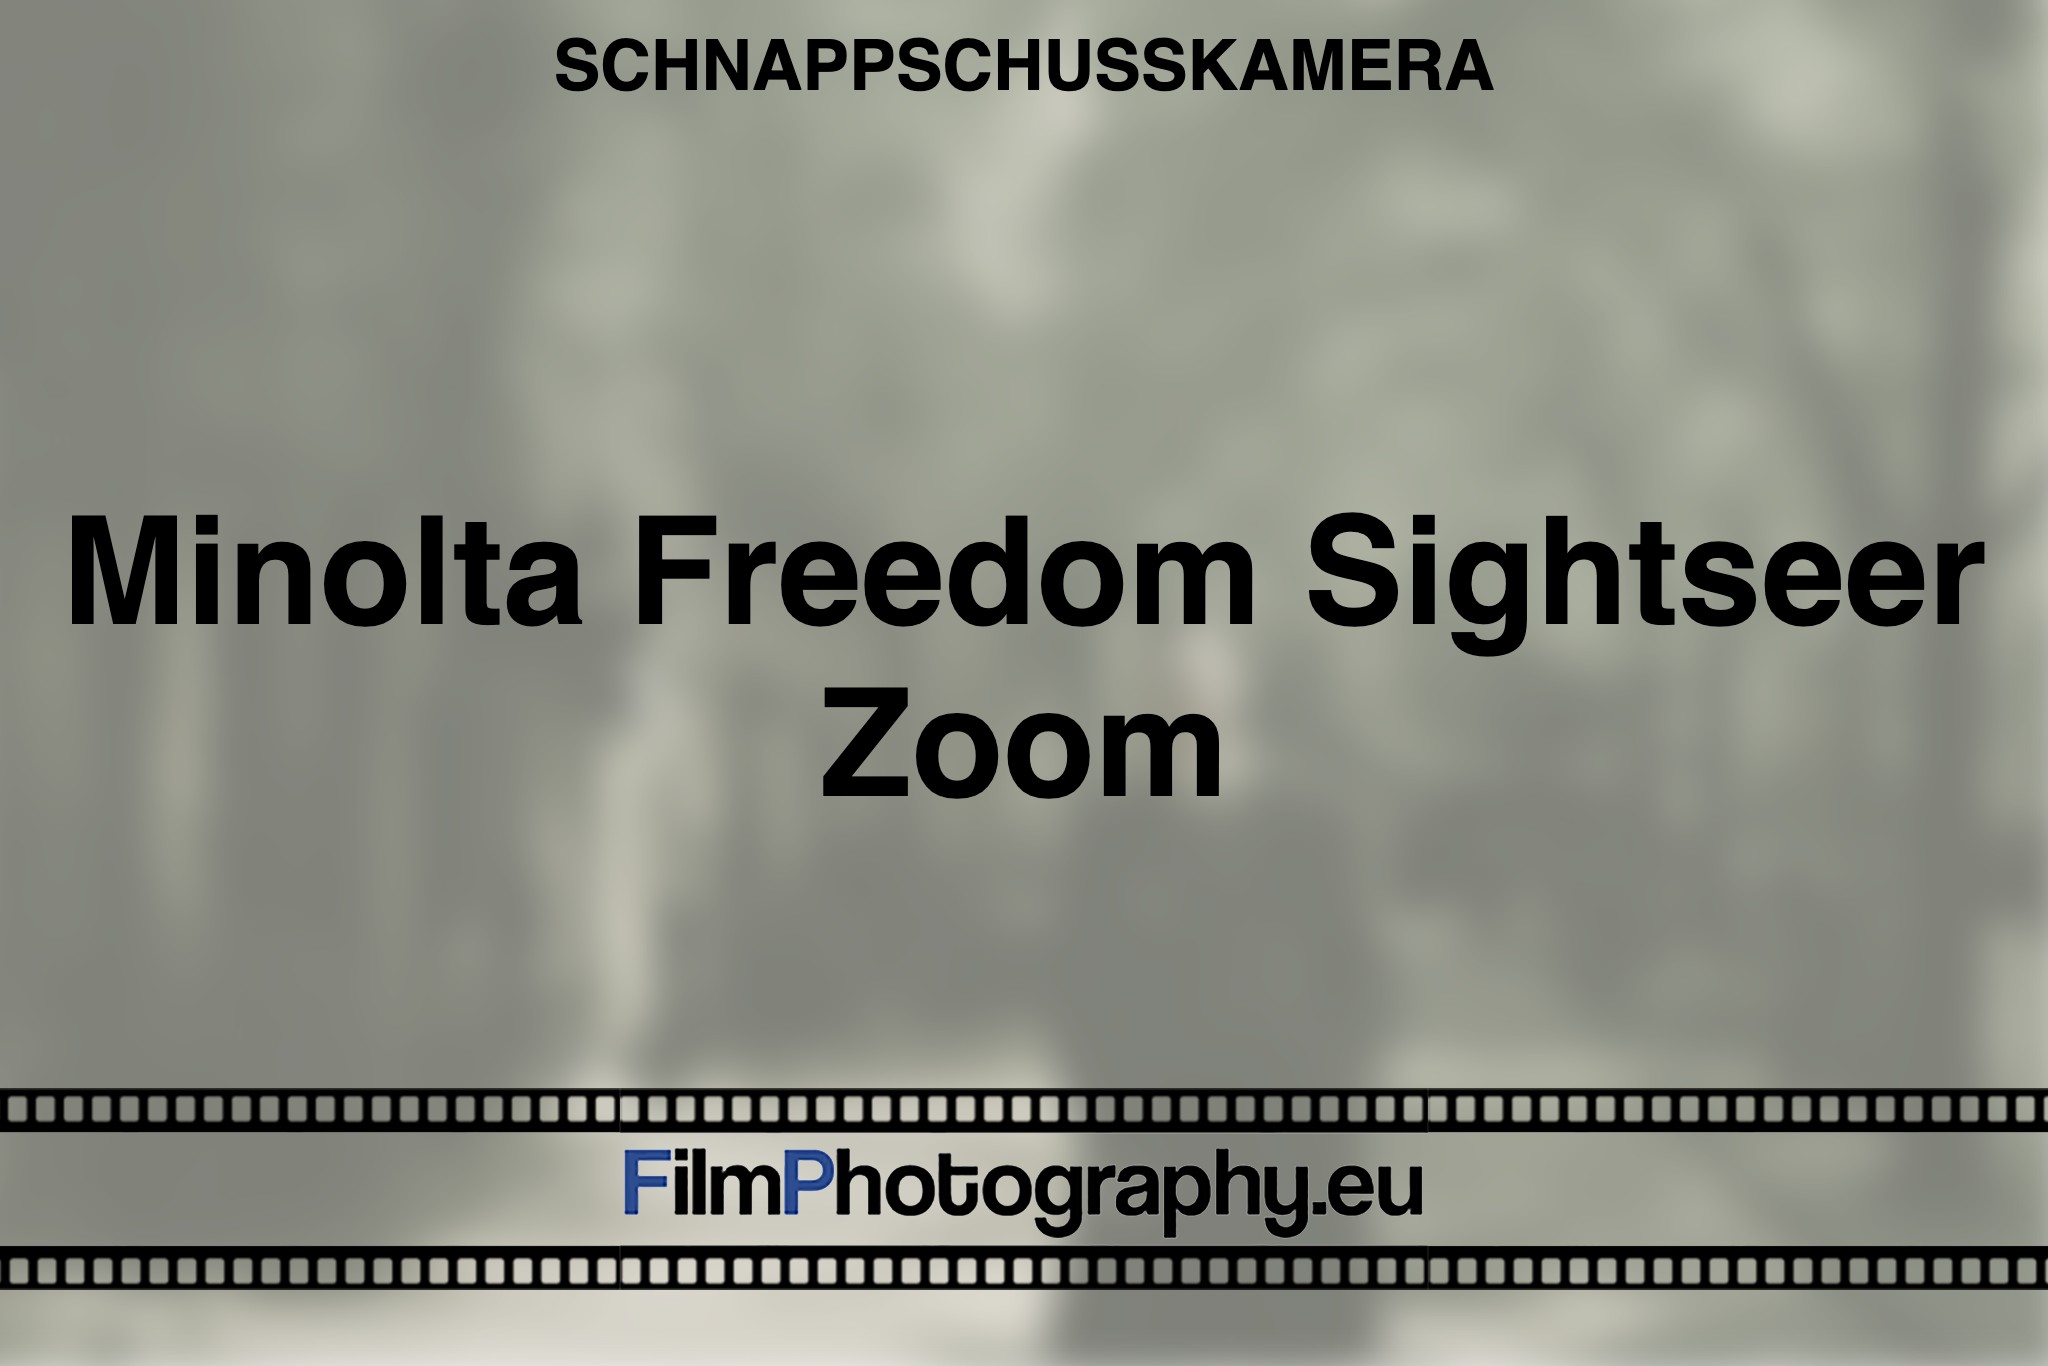 minolta-freedom-sightseer-zoom-schnappschusskamera-bnv